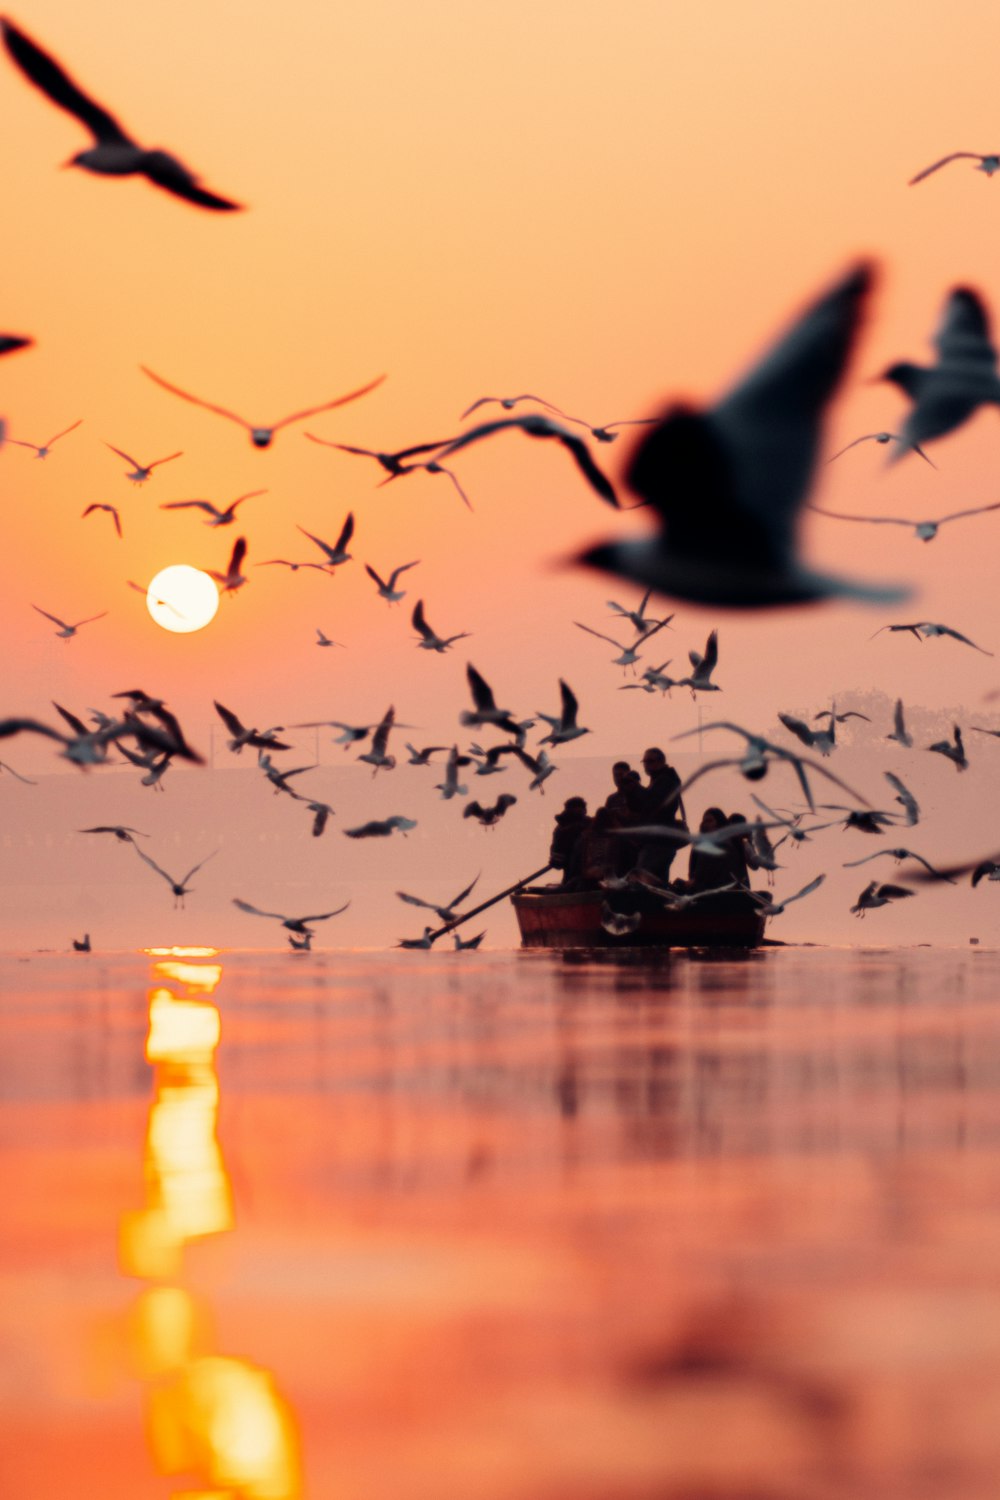 um bando de pássaros voando sobre um barco no oceano